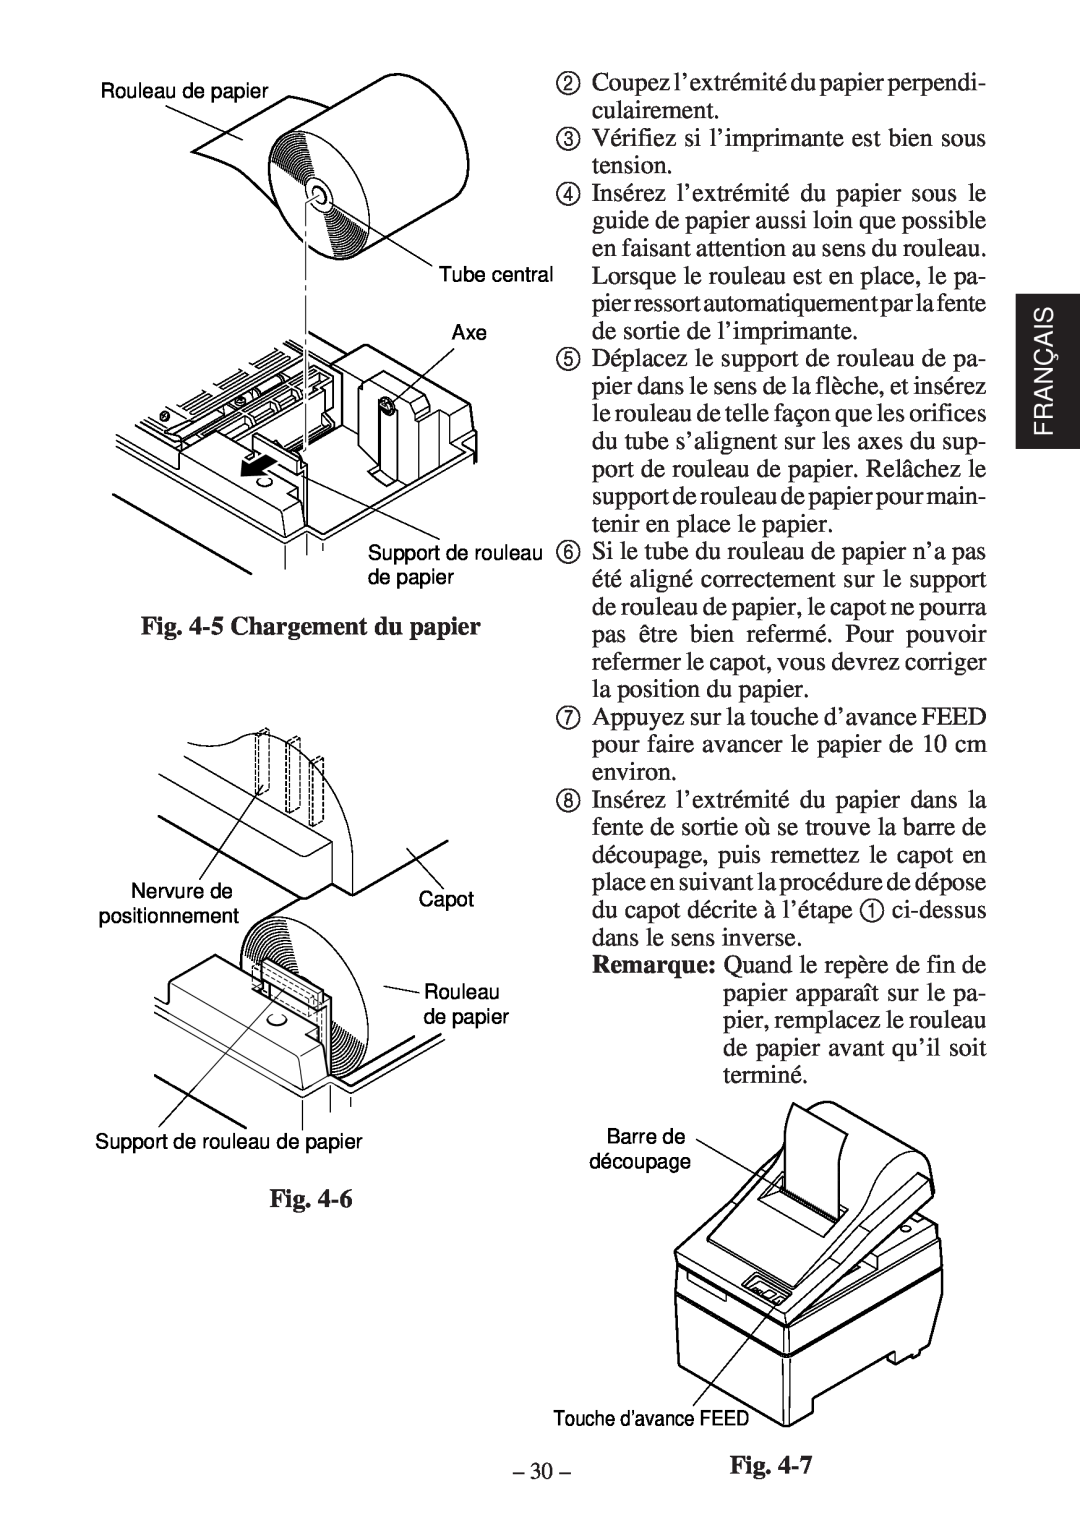 Star Micronics SP200F user manual 5 Chargement du papier, Français 